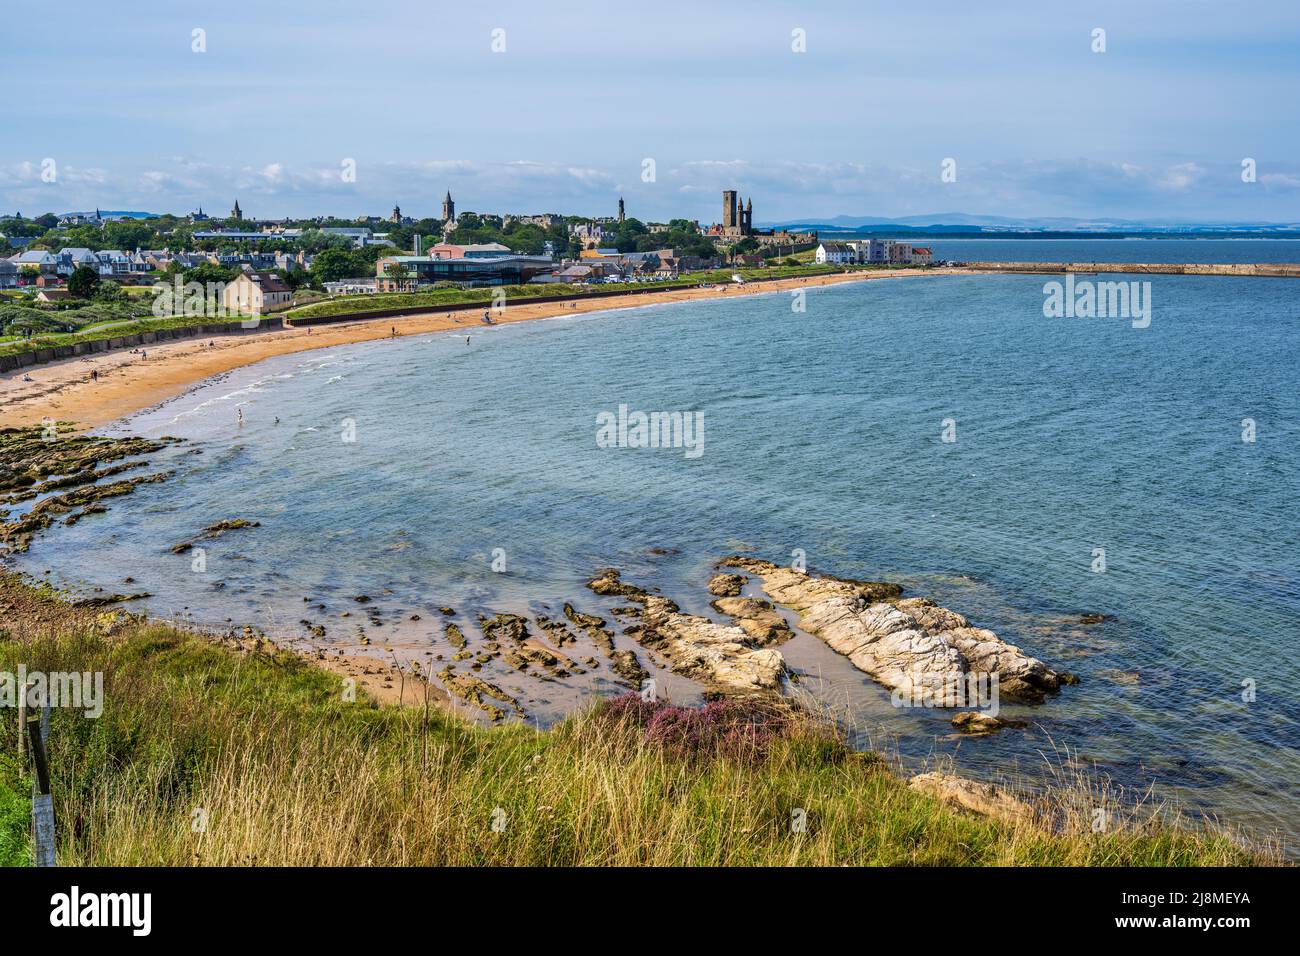 Erhöhter Blick auf den East Sands Beach im Royal Burgh of St Andrews in Fife, Schottland, Großbritannien Stockfoto